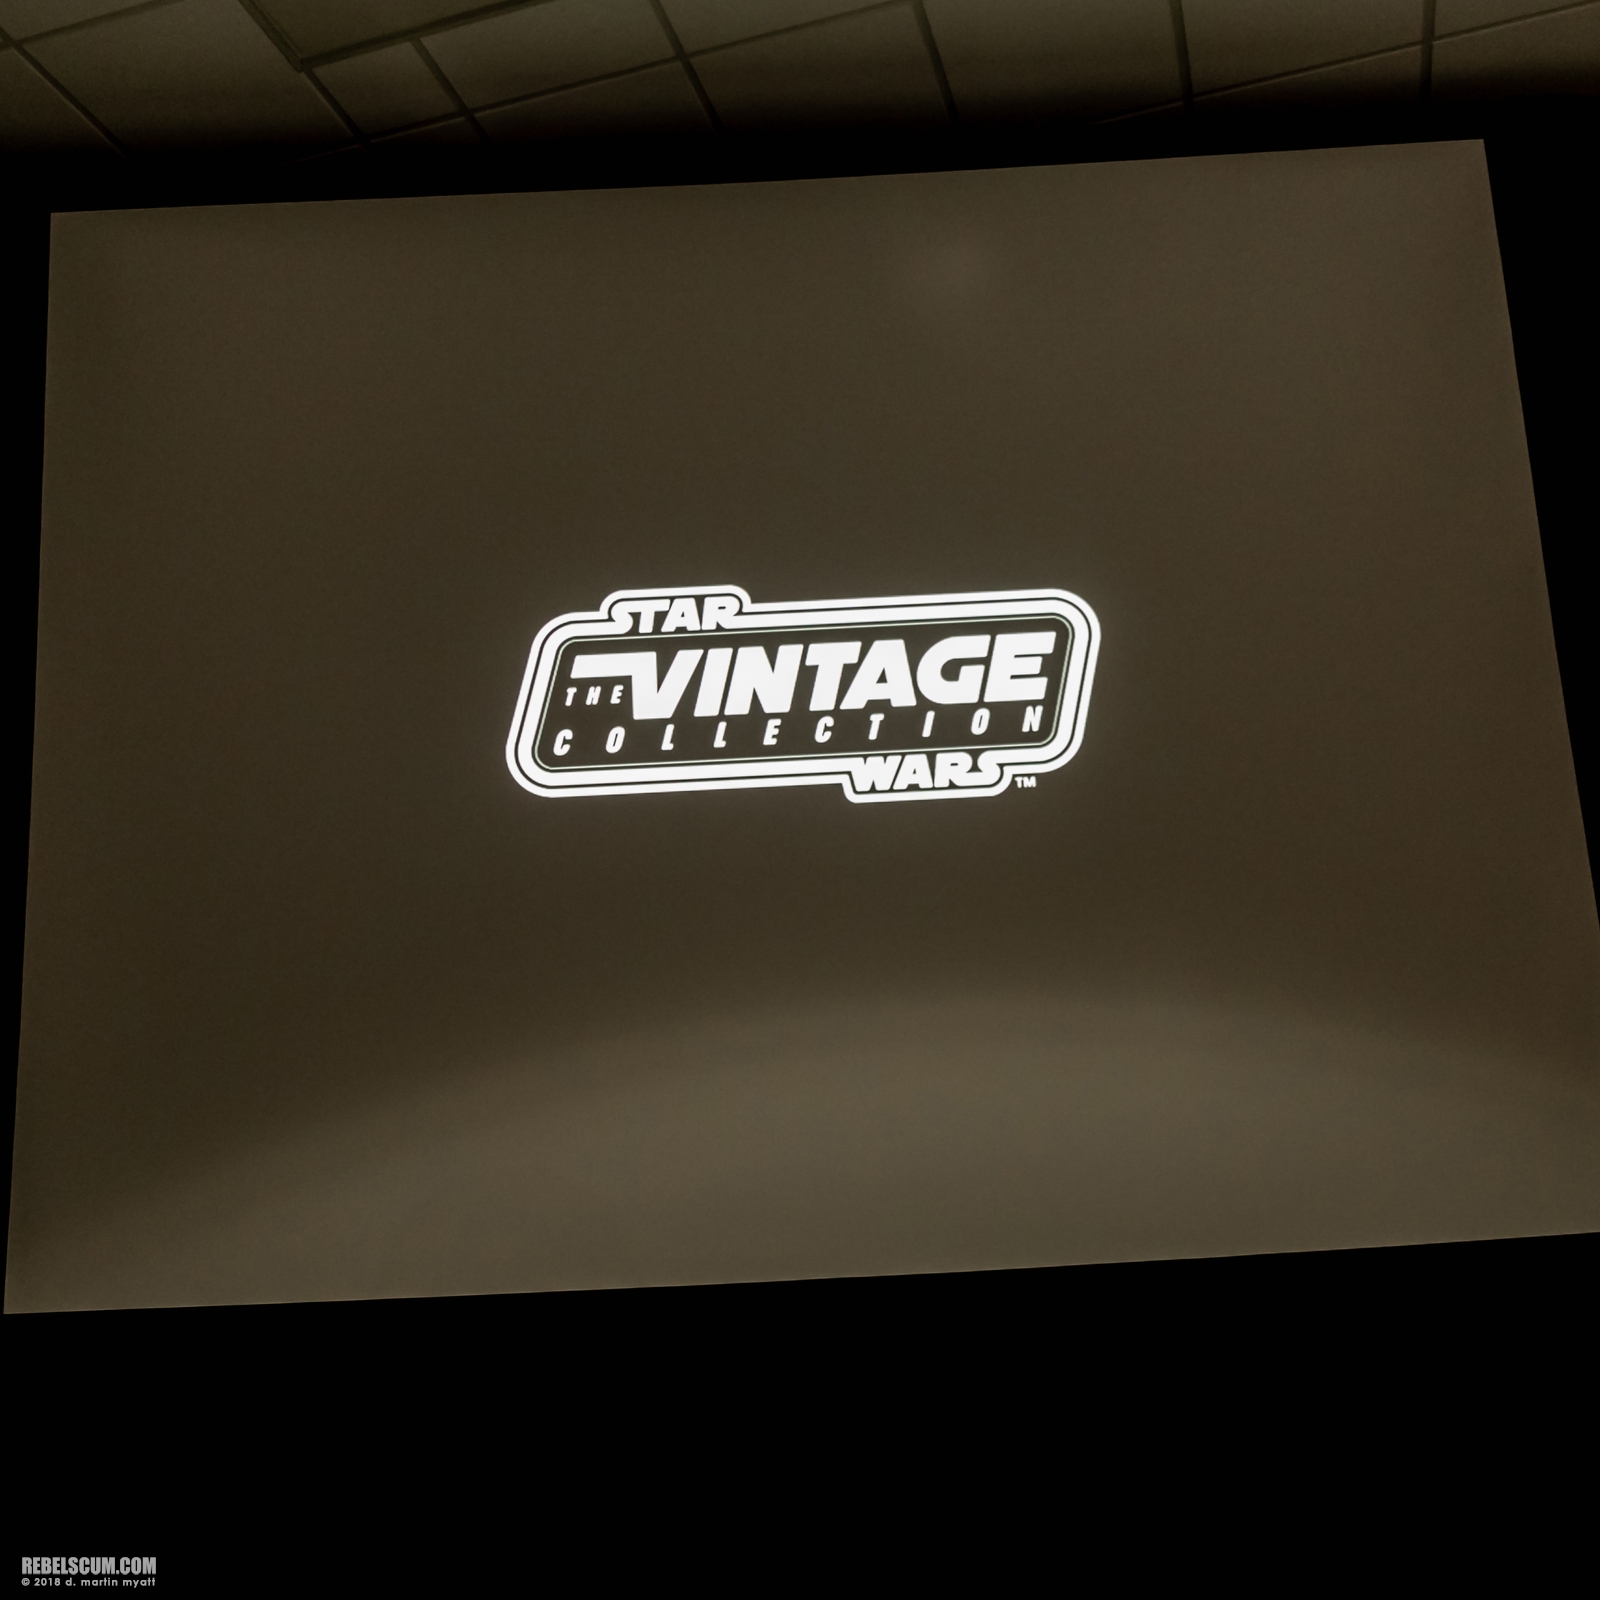 2018-San-Diego-Hasbro-Star-Wars-Panel-052.jpg